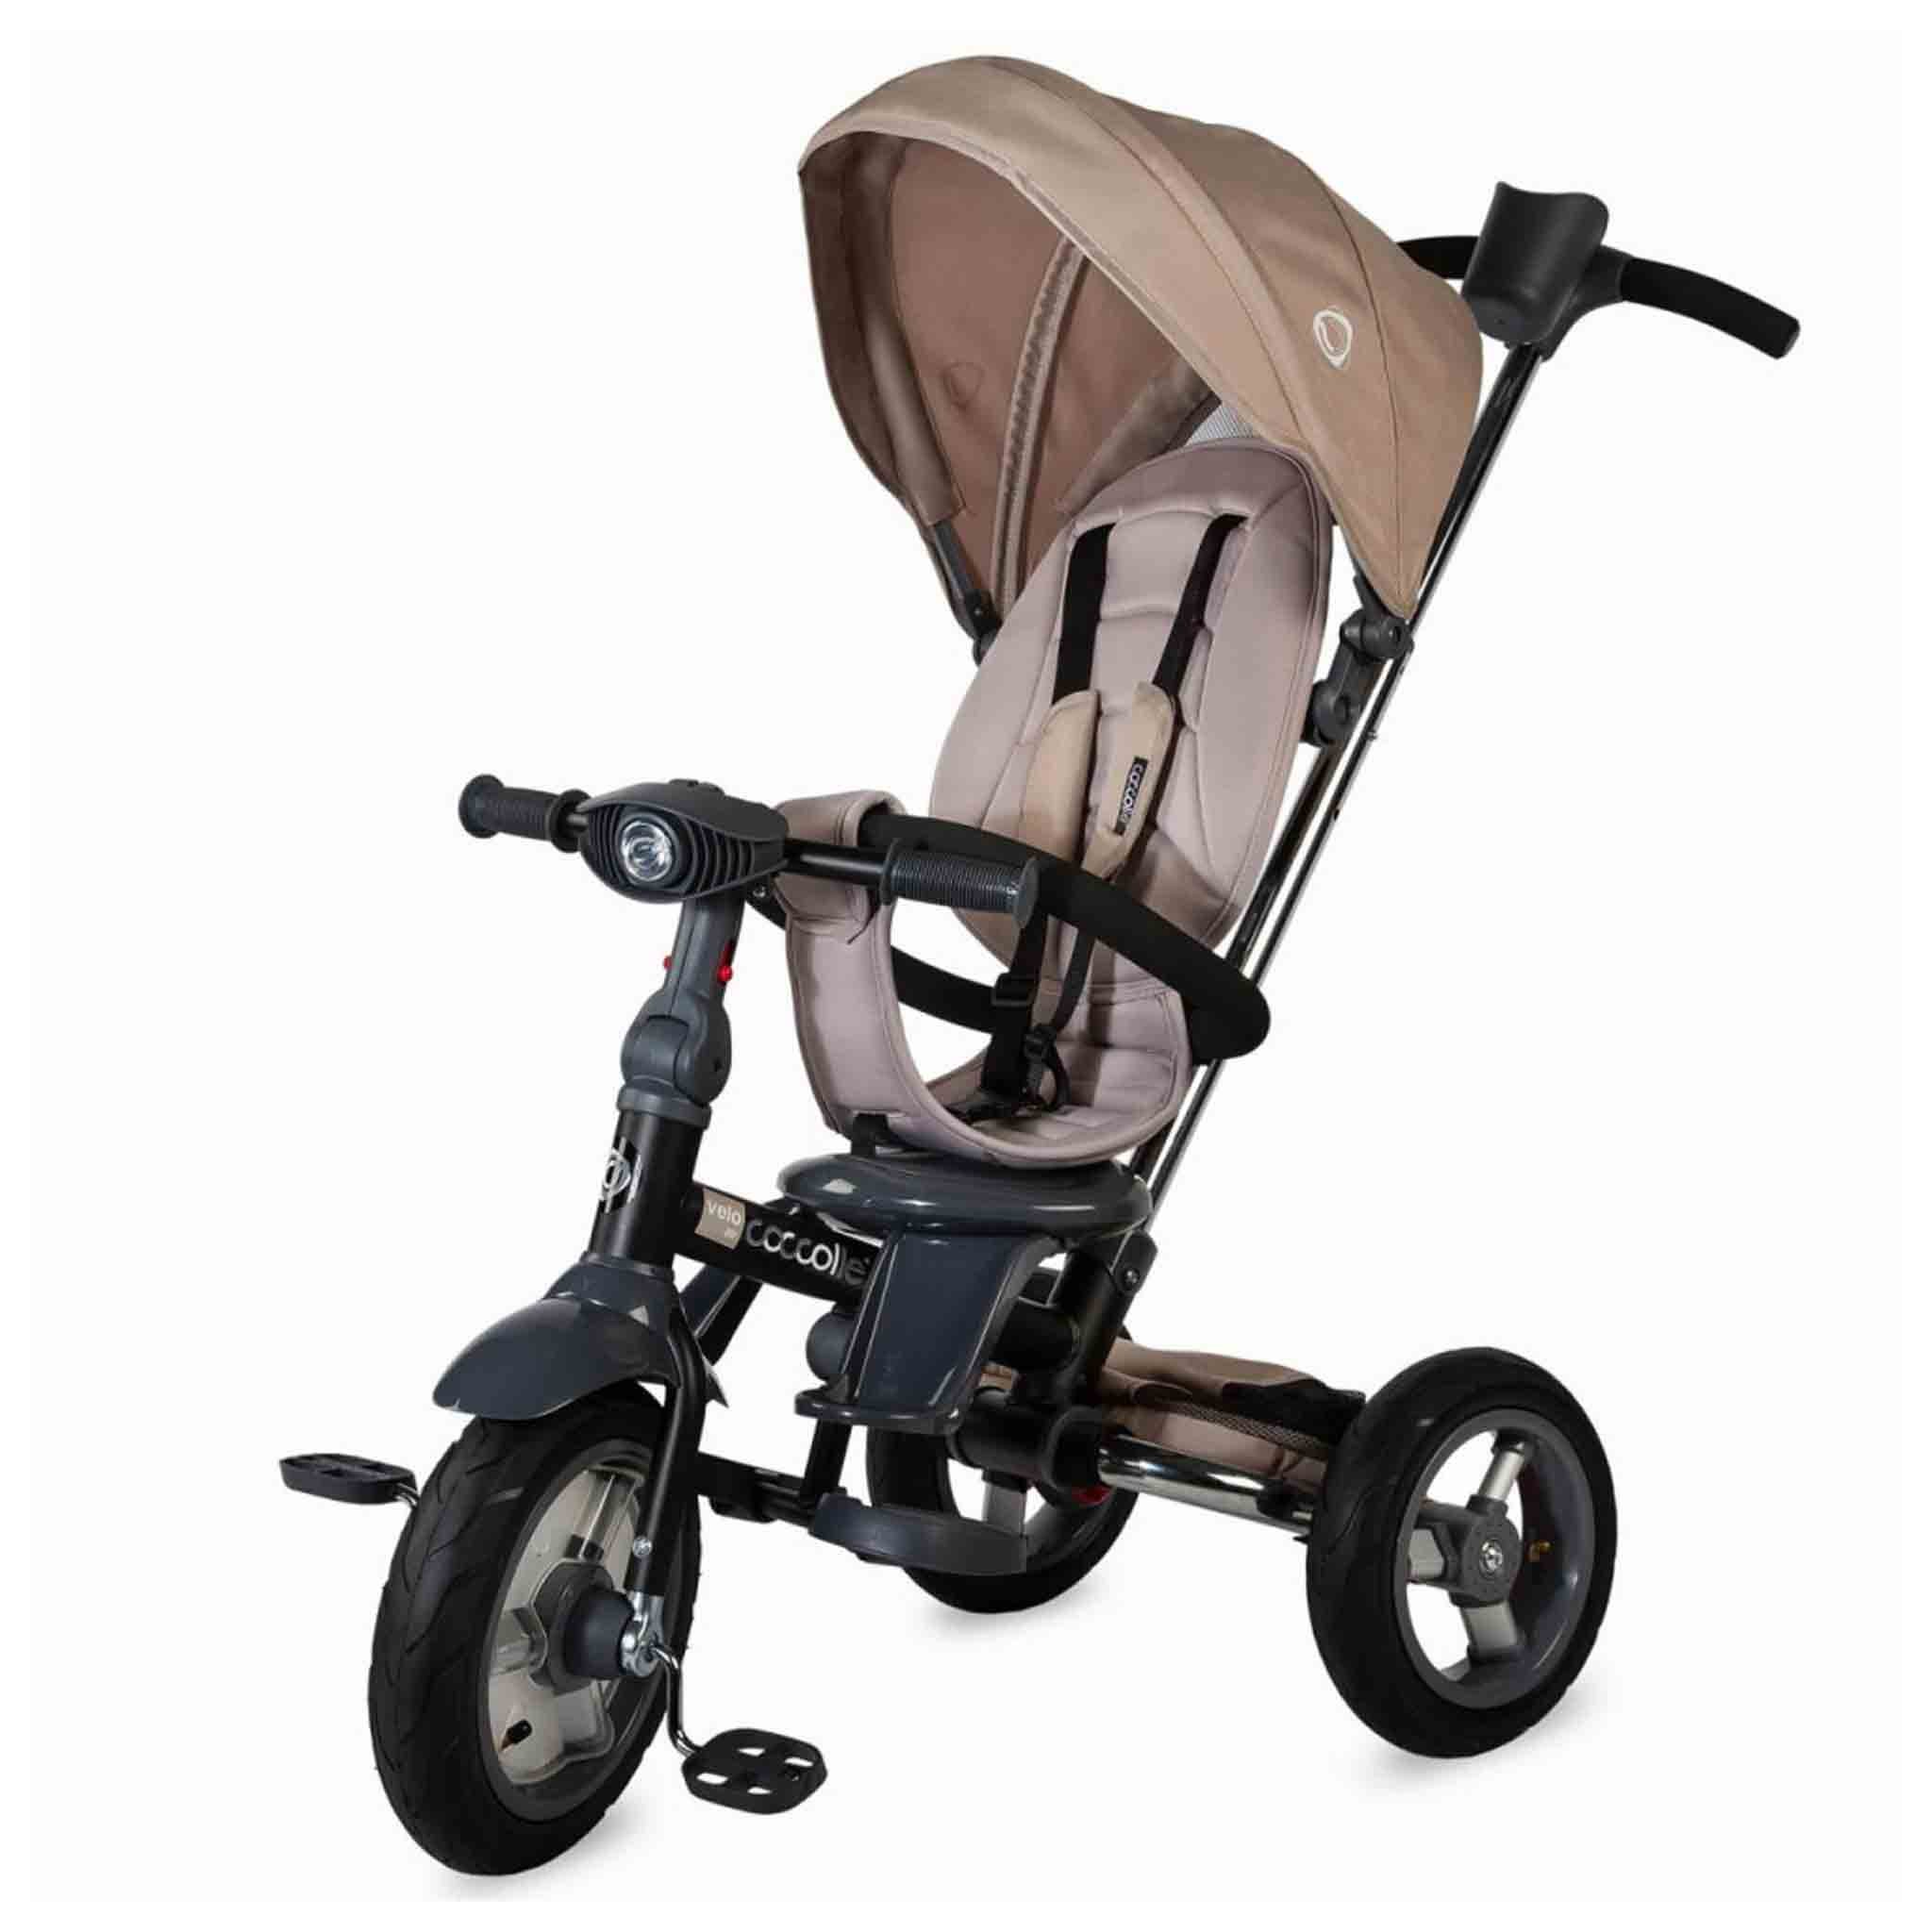 triciclo-velo-coccolle-vela-pieghevole-5-in-1-reclinabile-girevole-fronte-strada-mamma-bambino-ruote-beige.jpg